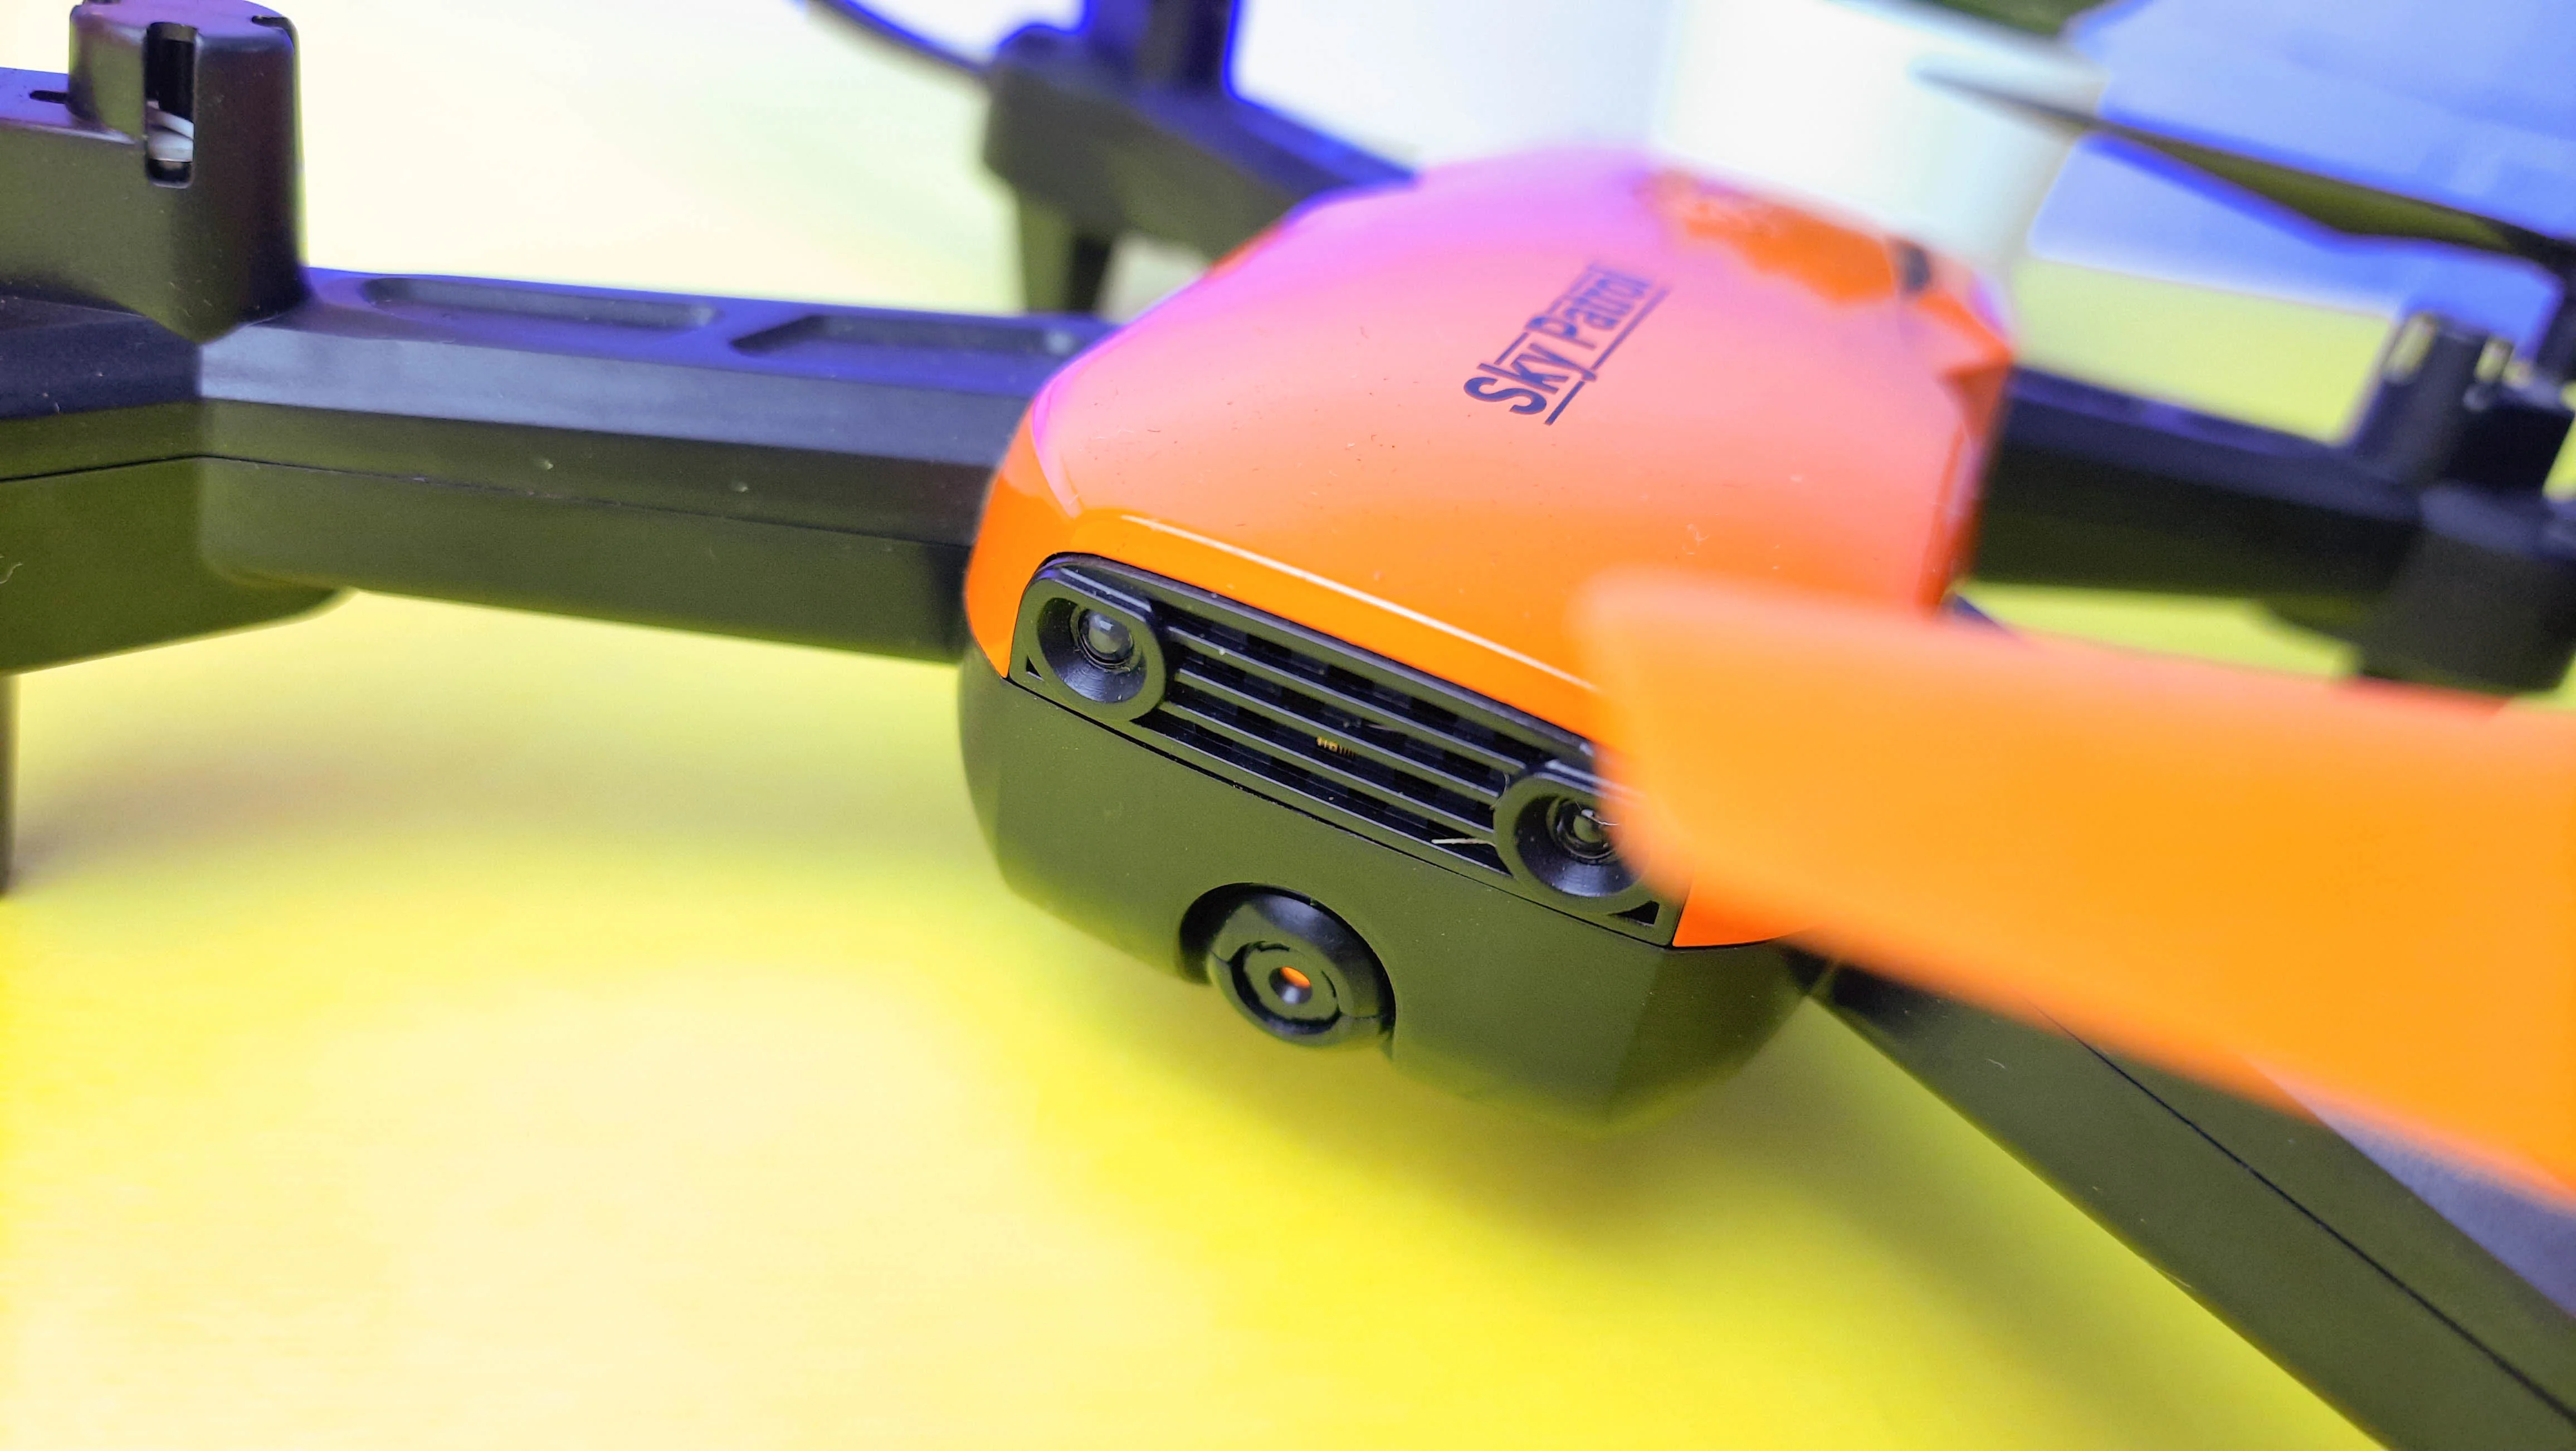 Обзор Hiper Sky Patrol FPV: что умеет бюджетный квадрокоптер для начинающих - фото 5